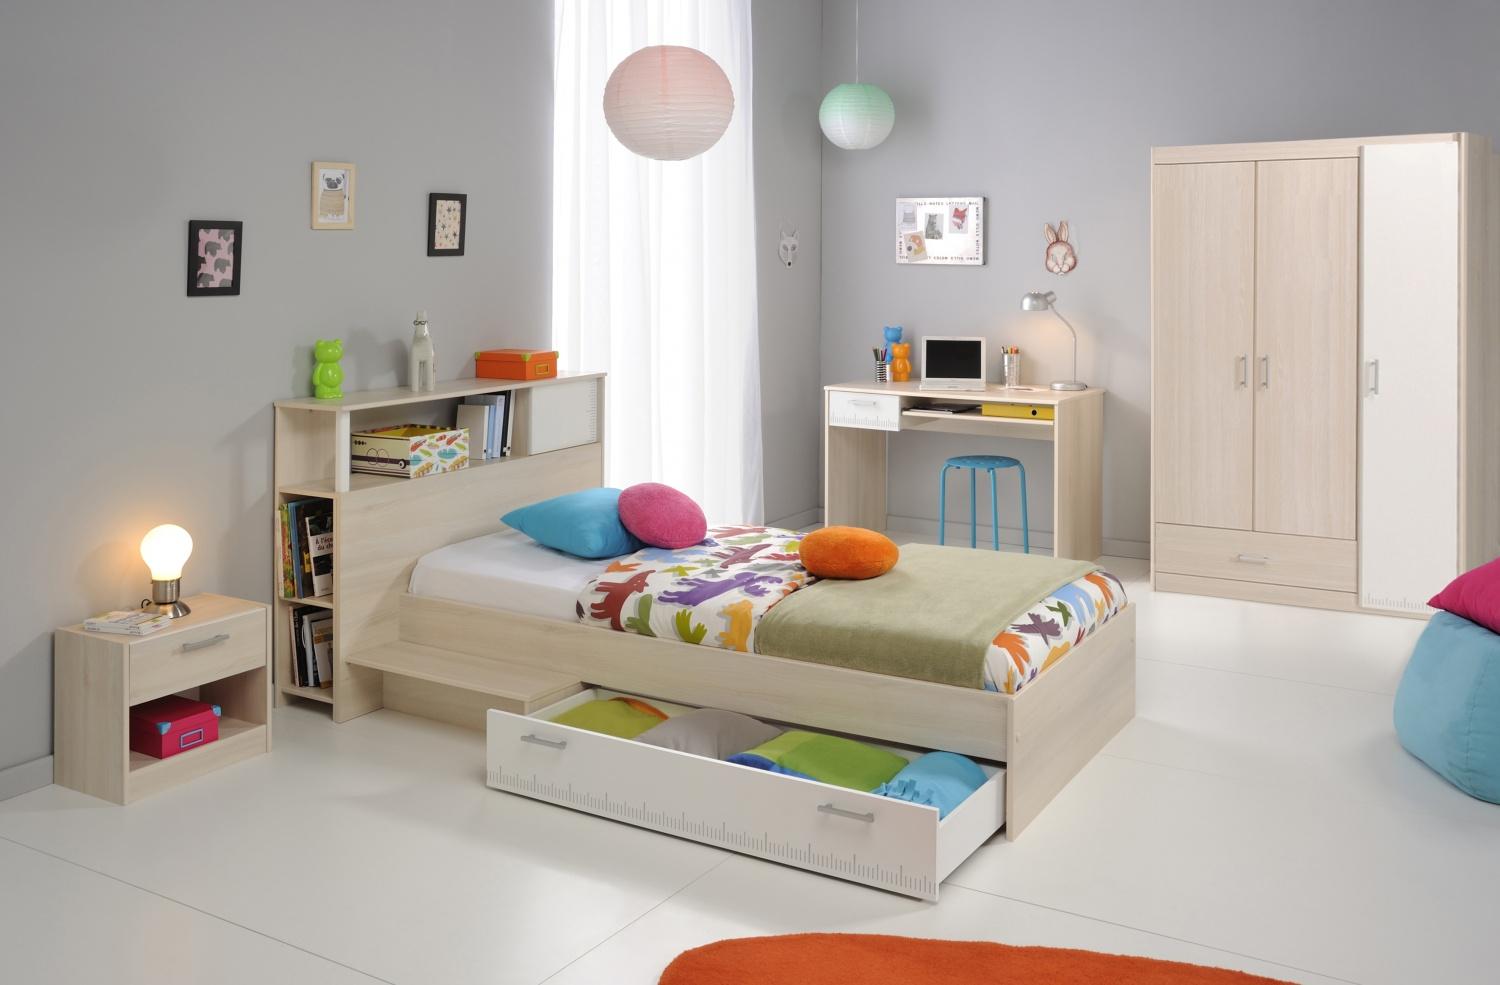 PARISOT 'Tesso' 5-tlg. Kinderzimmer-Set, akazie/weiß, aus Bett 90x200 cm inkl. Bettschublade, Nachttisch, 3-trg. Kleiderschrank, Schreibtisch und Anstellregal Bild 1